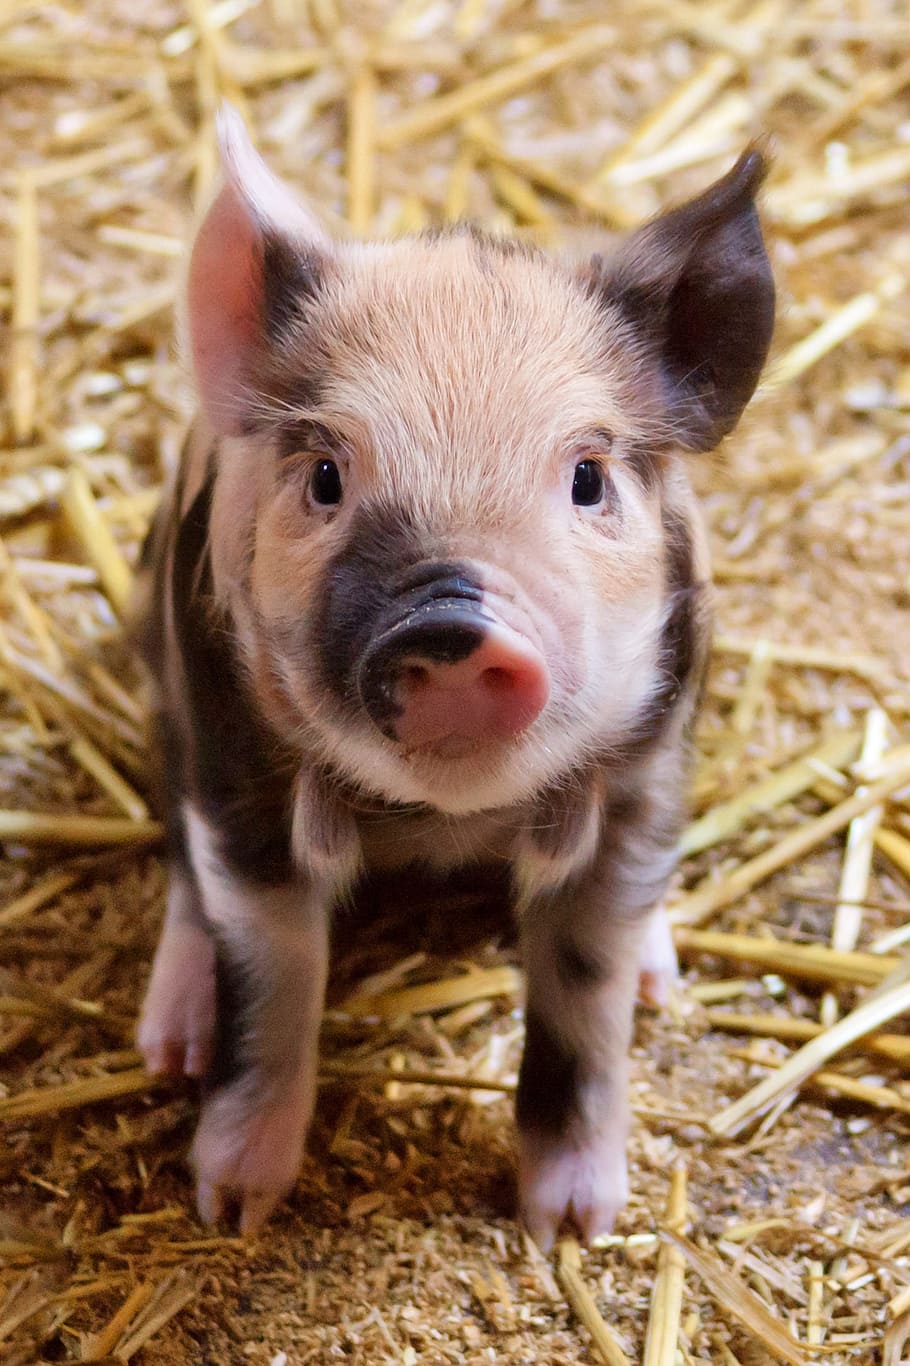 Cute Pigs Wallpaper Download